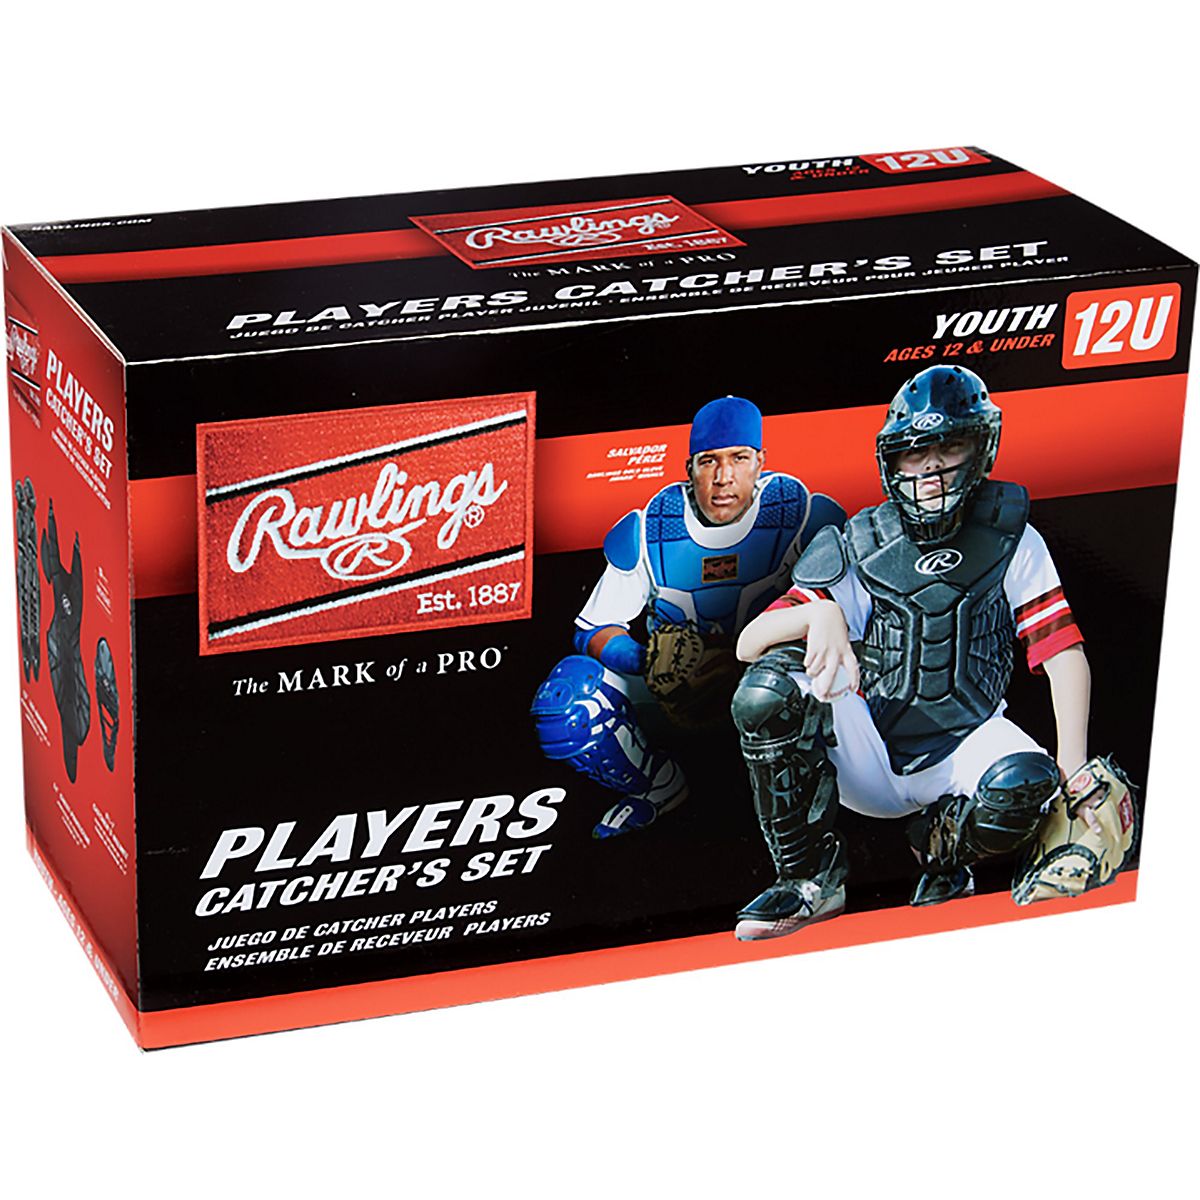 Baseball Catchers Gear, Catchers Equipment